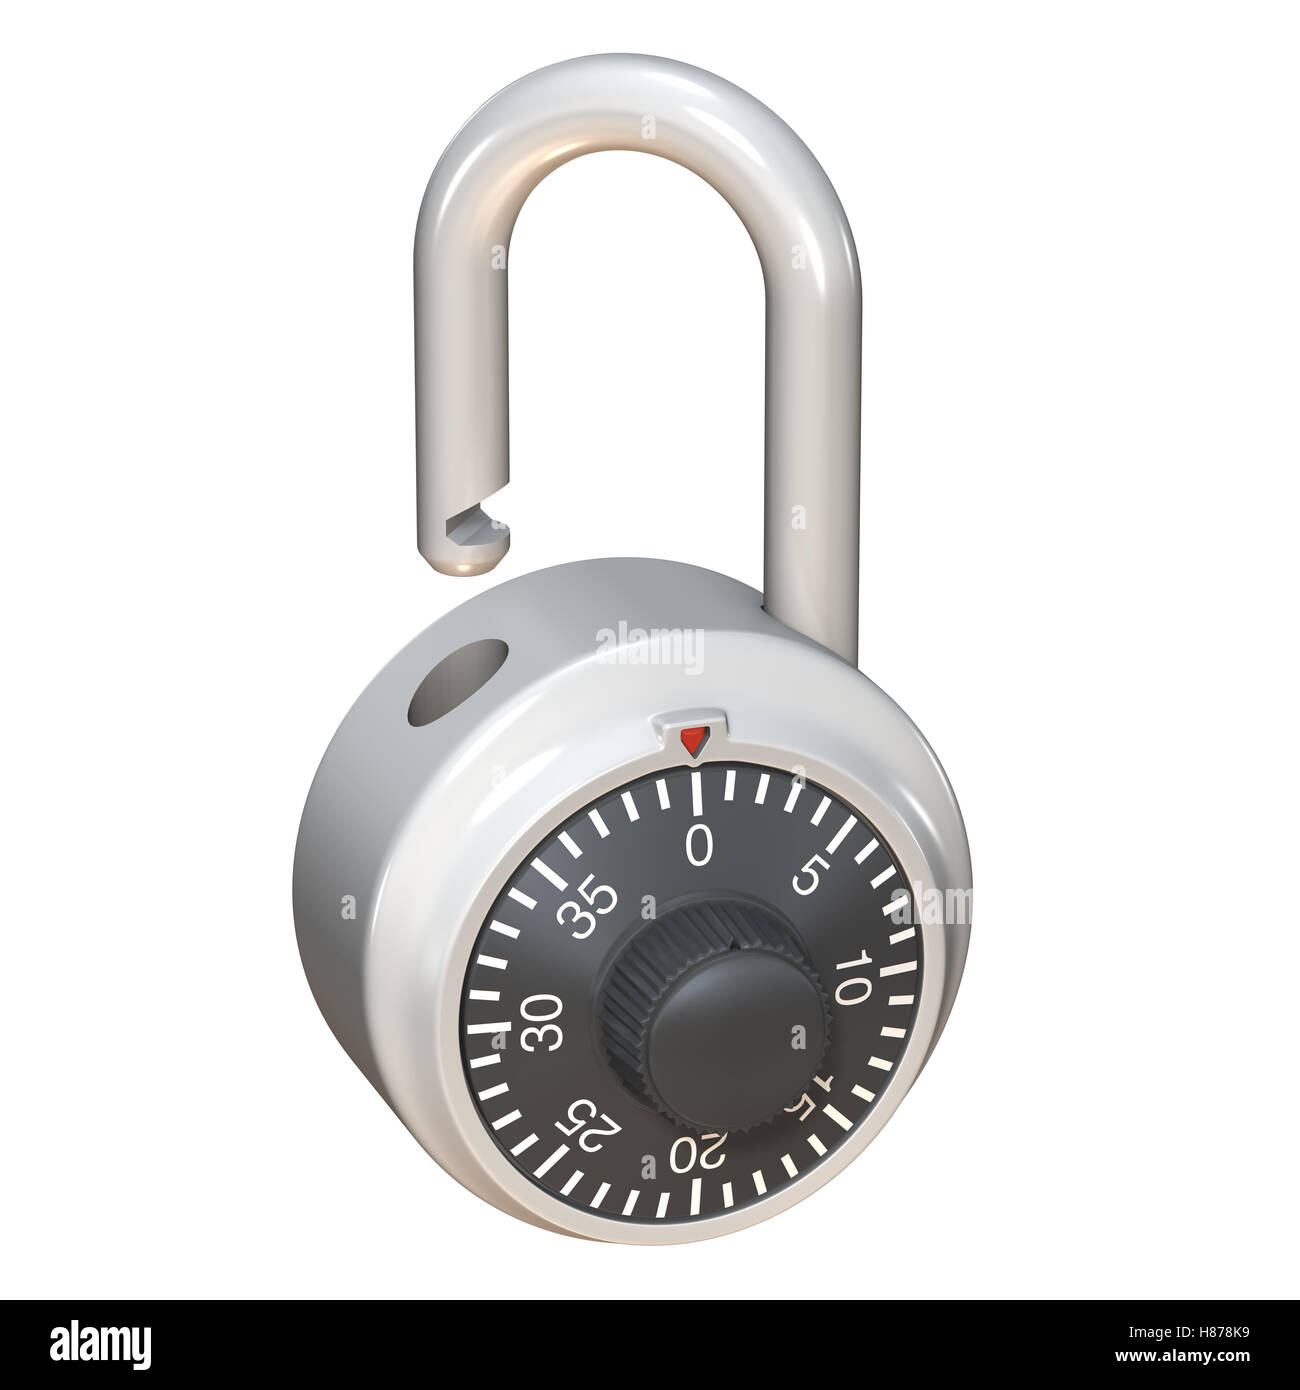 3D illustration of padlock, isolated on white background. Stock Photo